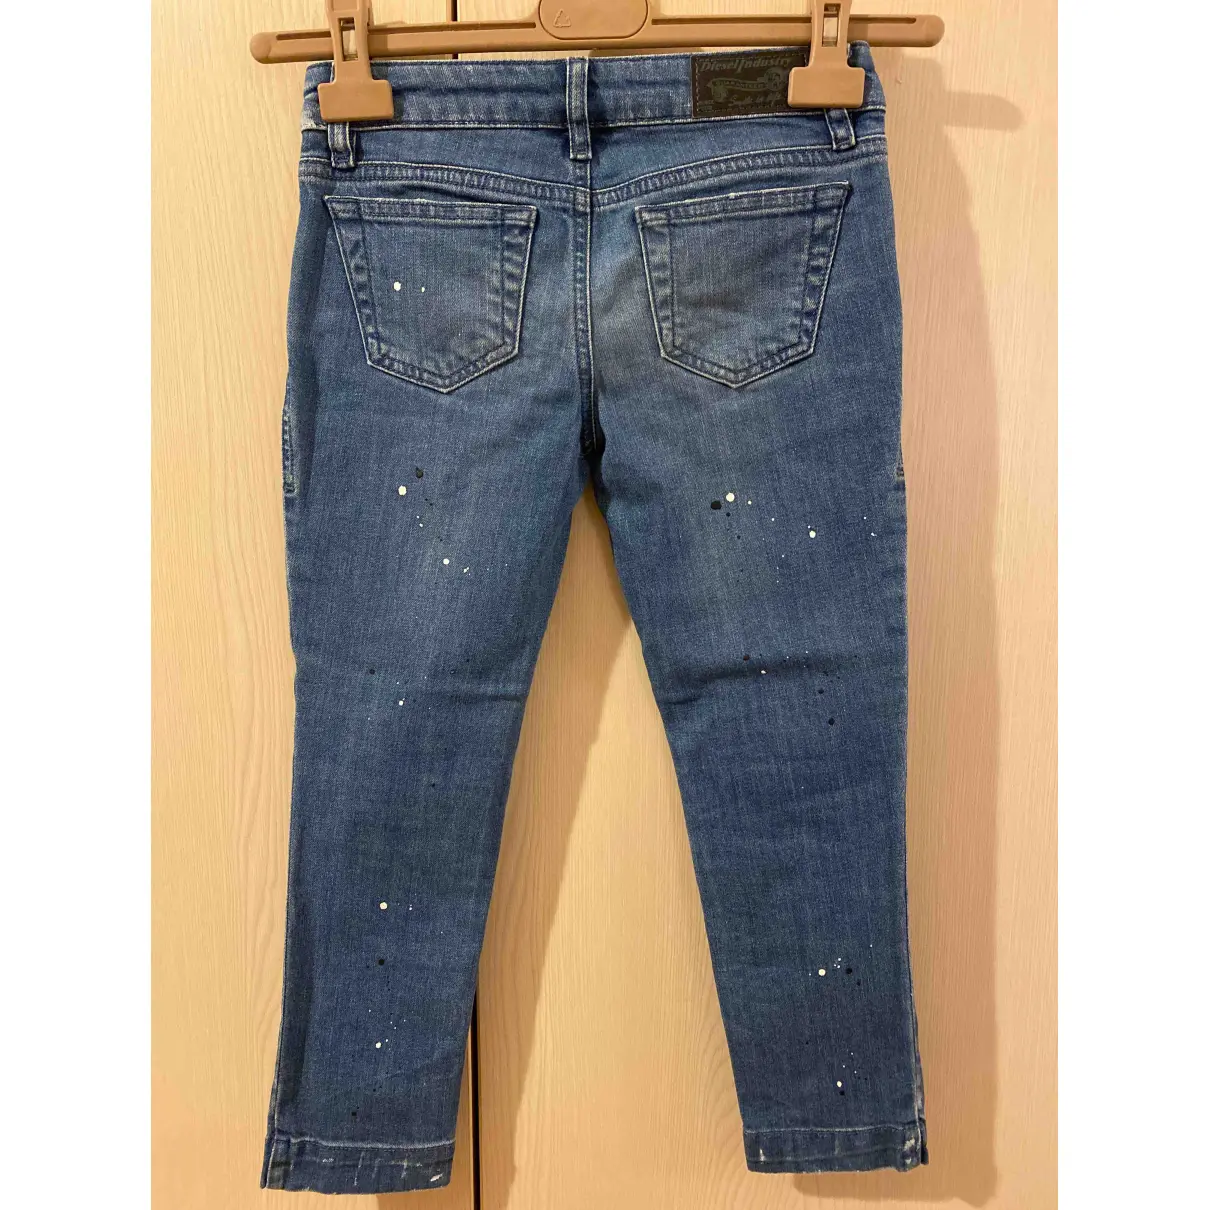 Buy Diesel Blue Denim - Jeans Trousers online